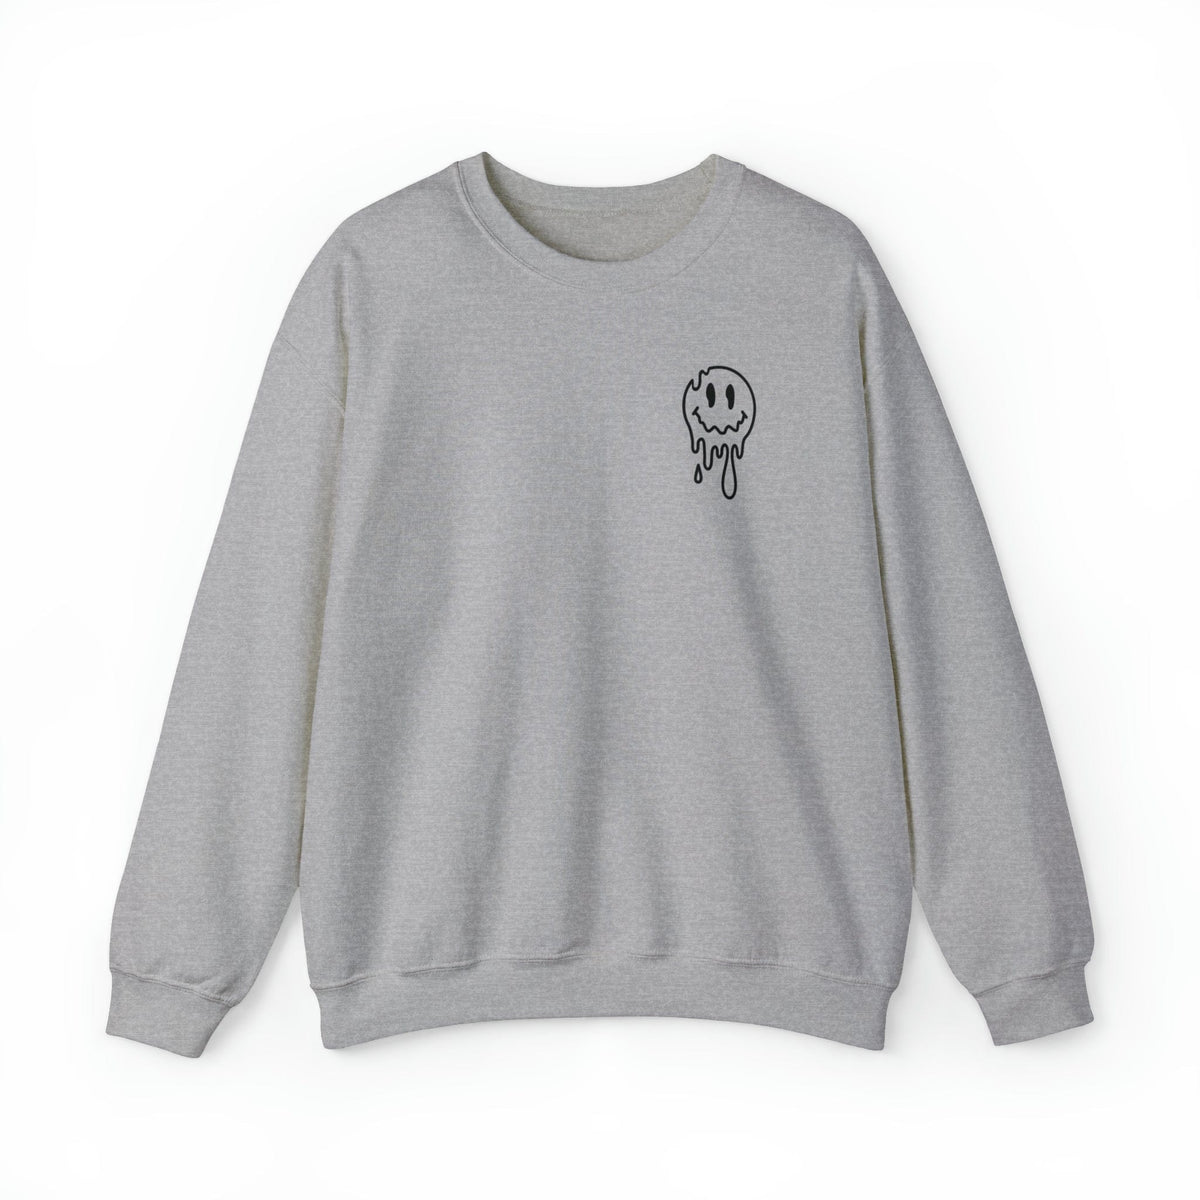 The Joker Crewneck | Rock Song Sweatshirt | Music Lovers Sweater Sweatshirt TheFringeCultureCollective